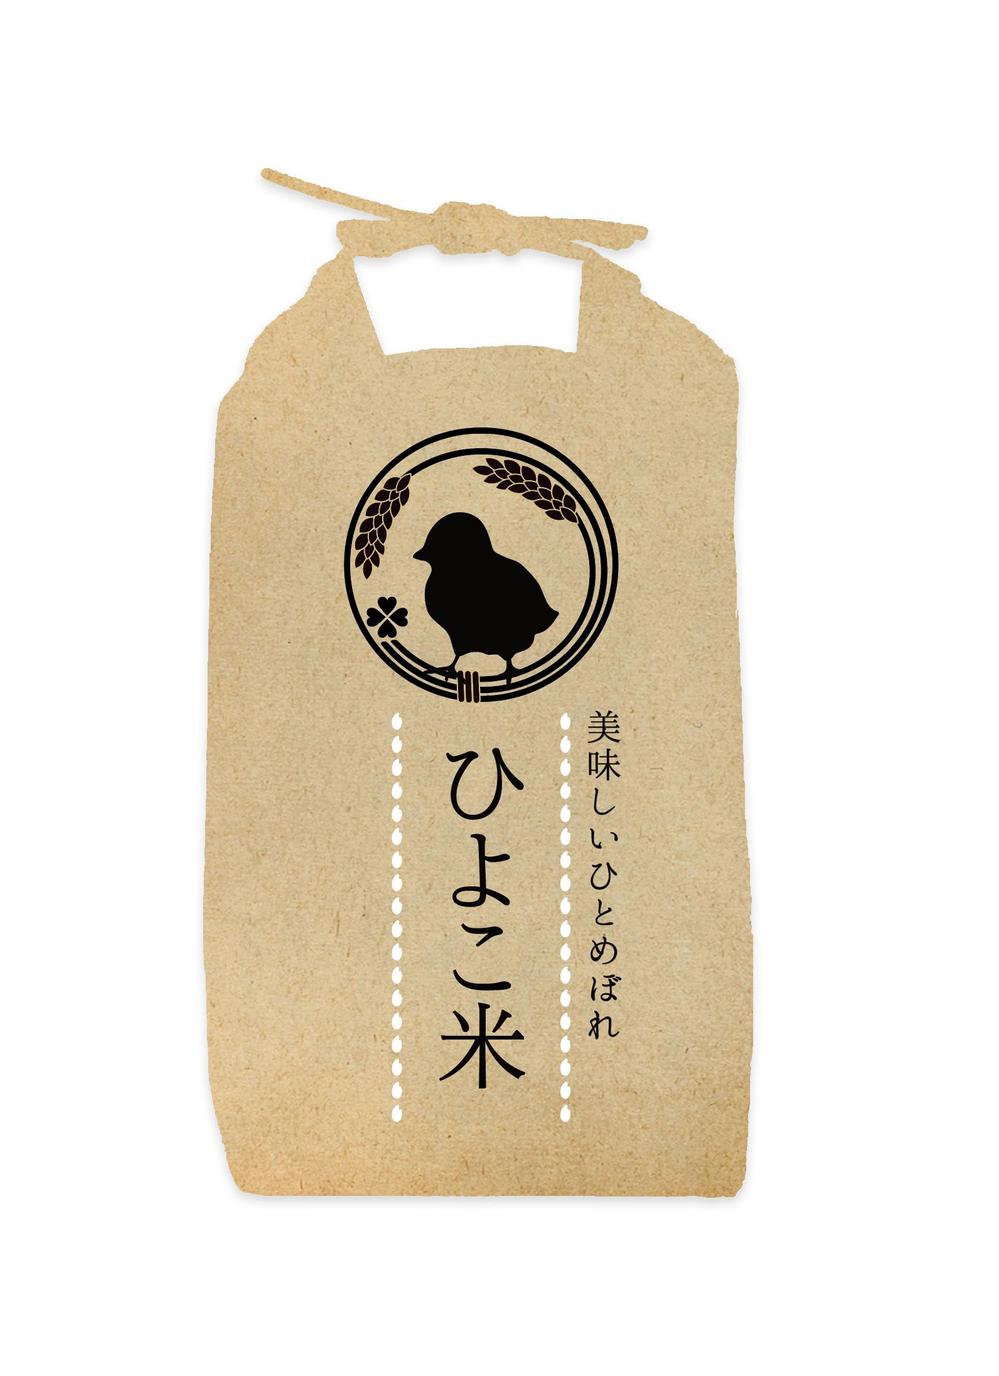 お米の袋のデザイン